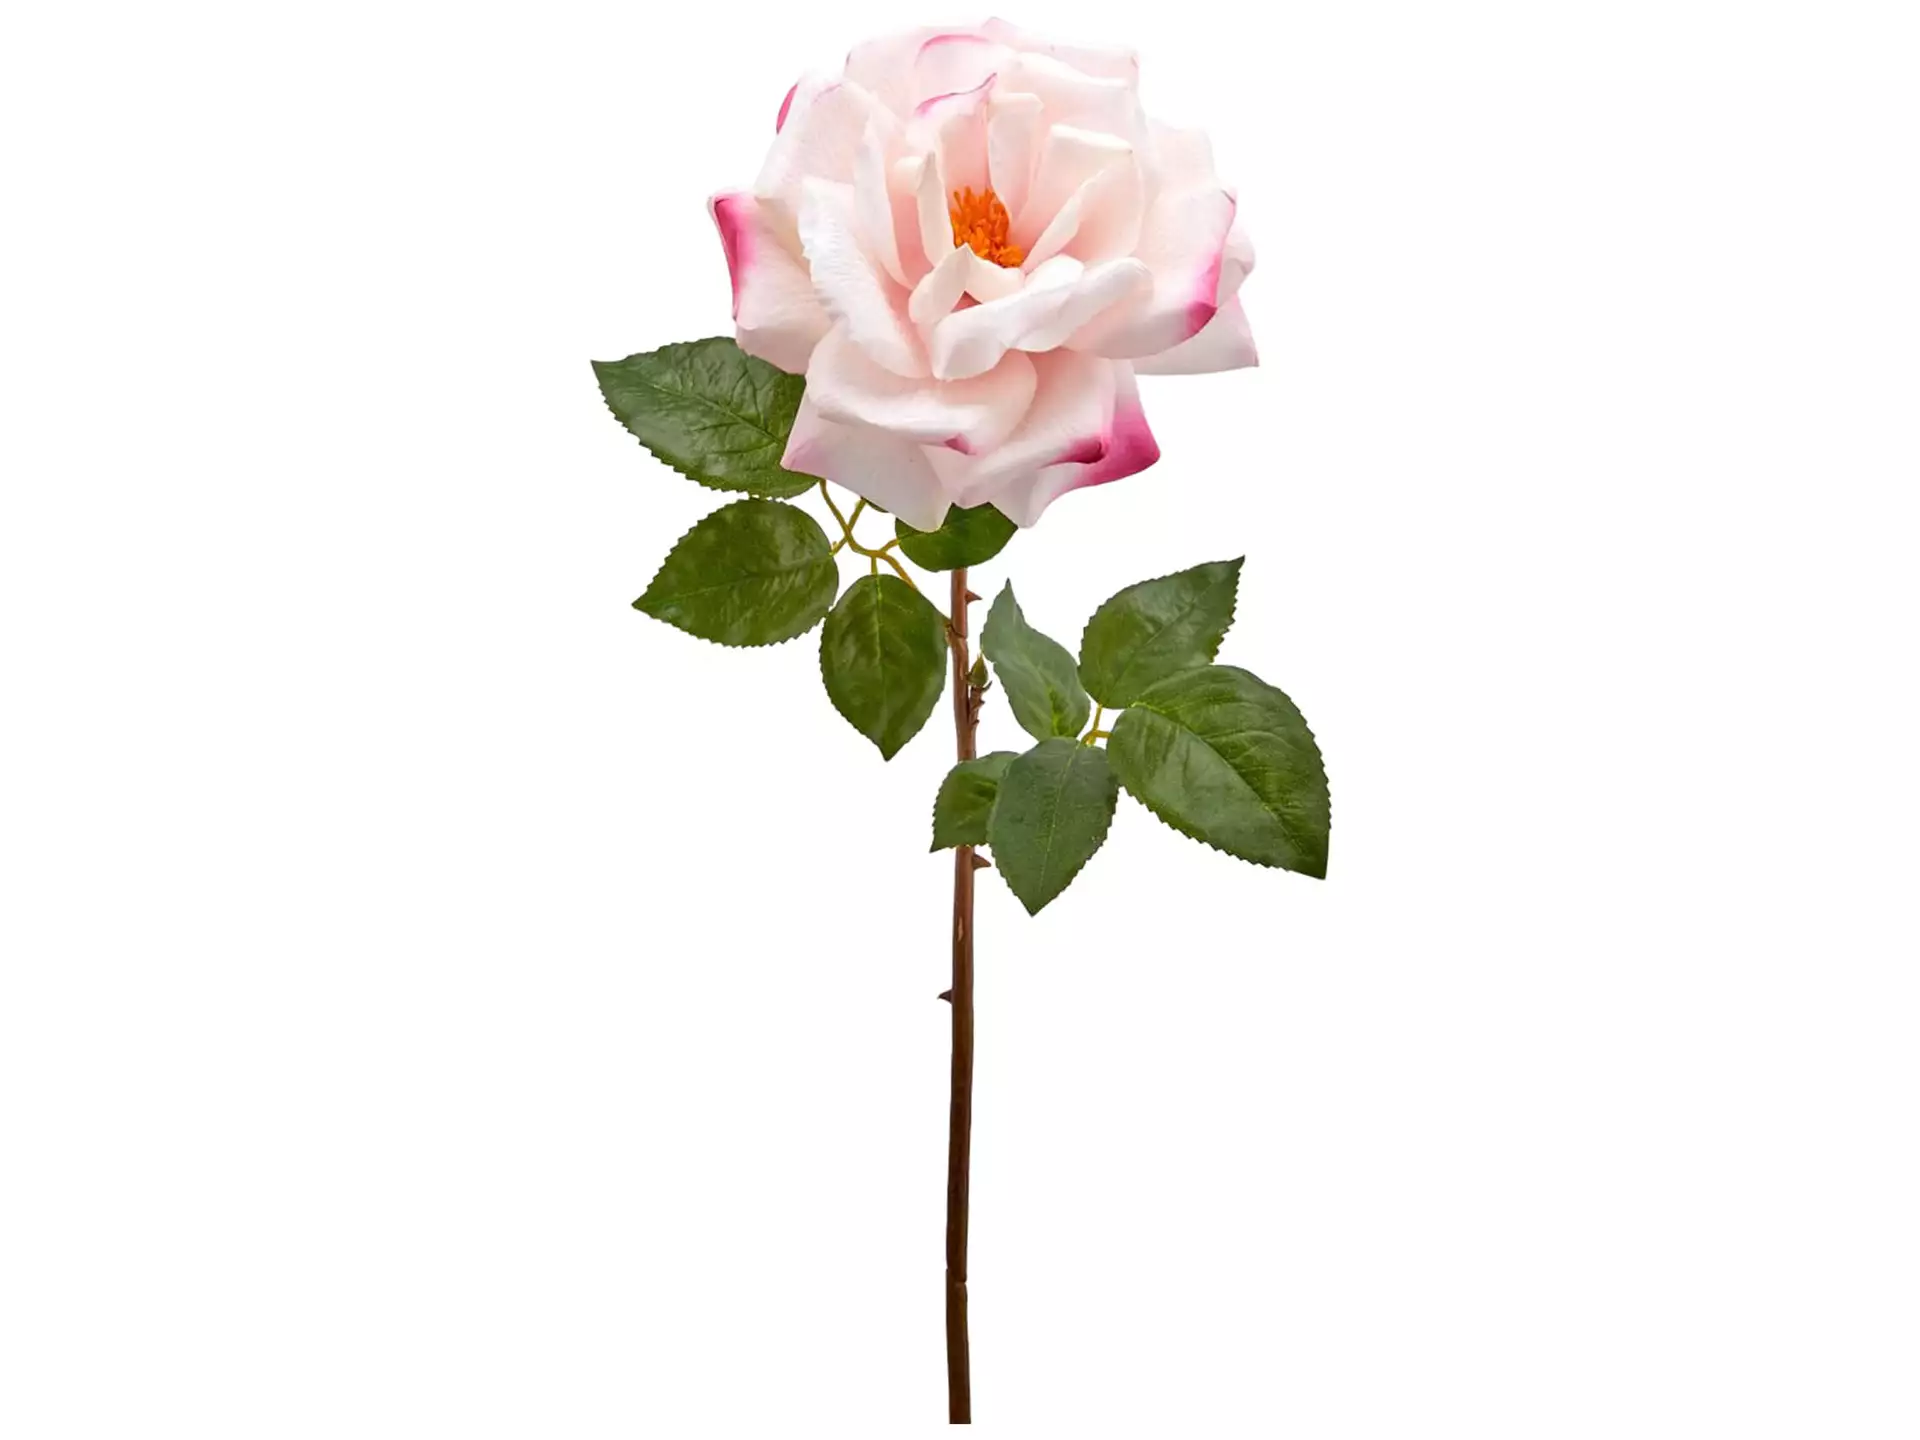 Kunstblumen Rose Rosa H: 56 cm Edg